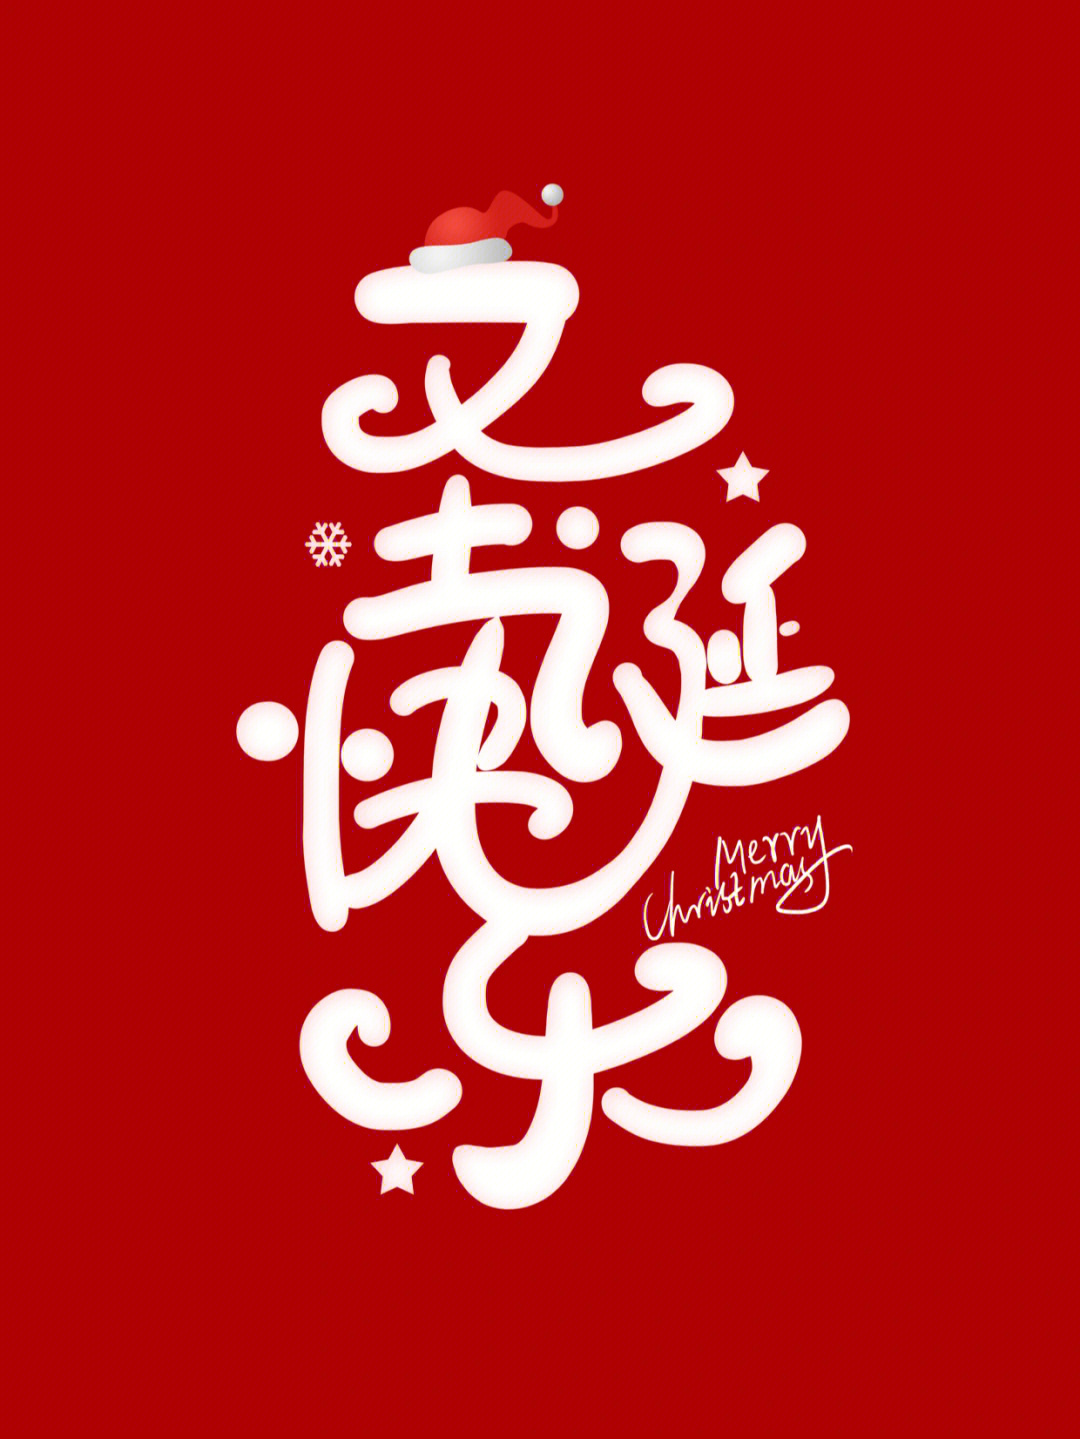 124汉字创意手写字体设计圣诞快乐